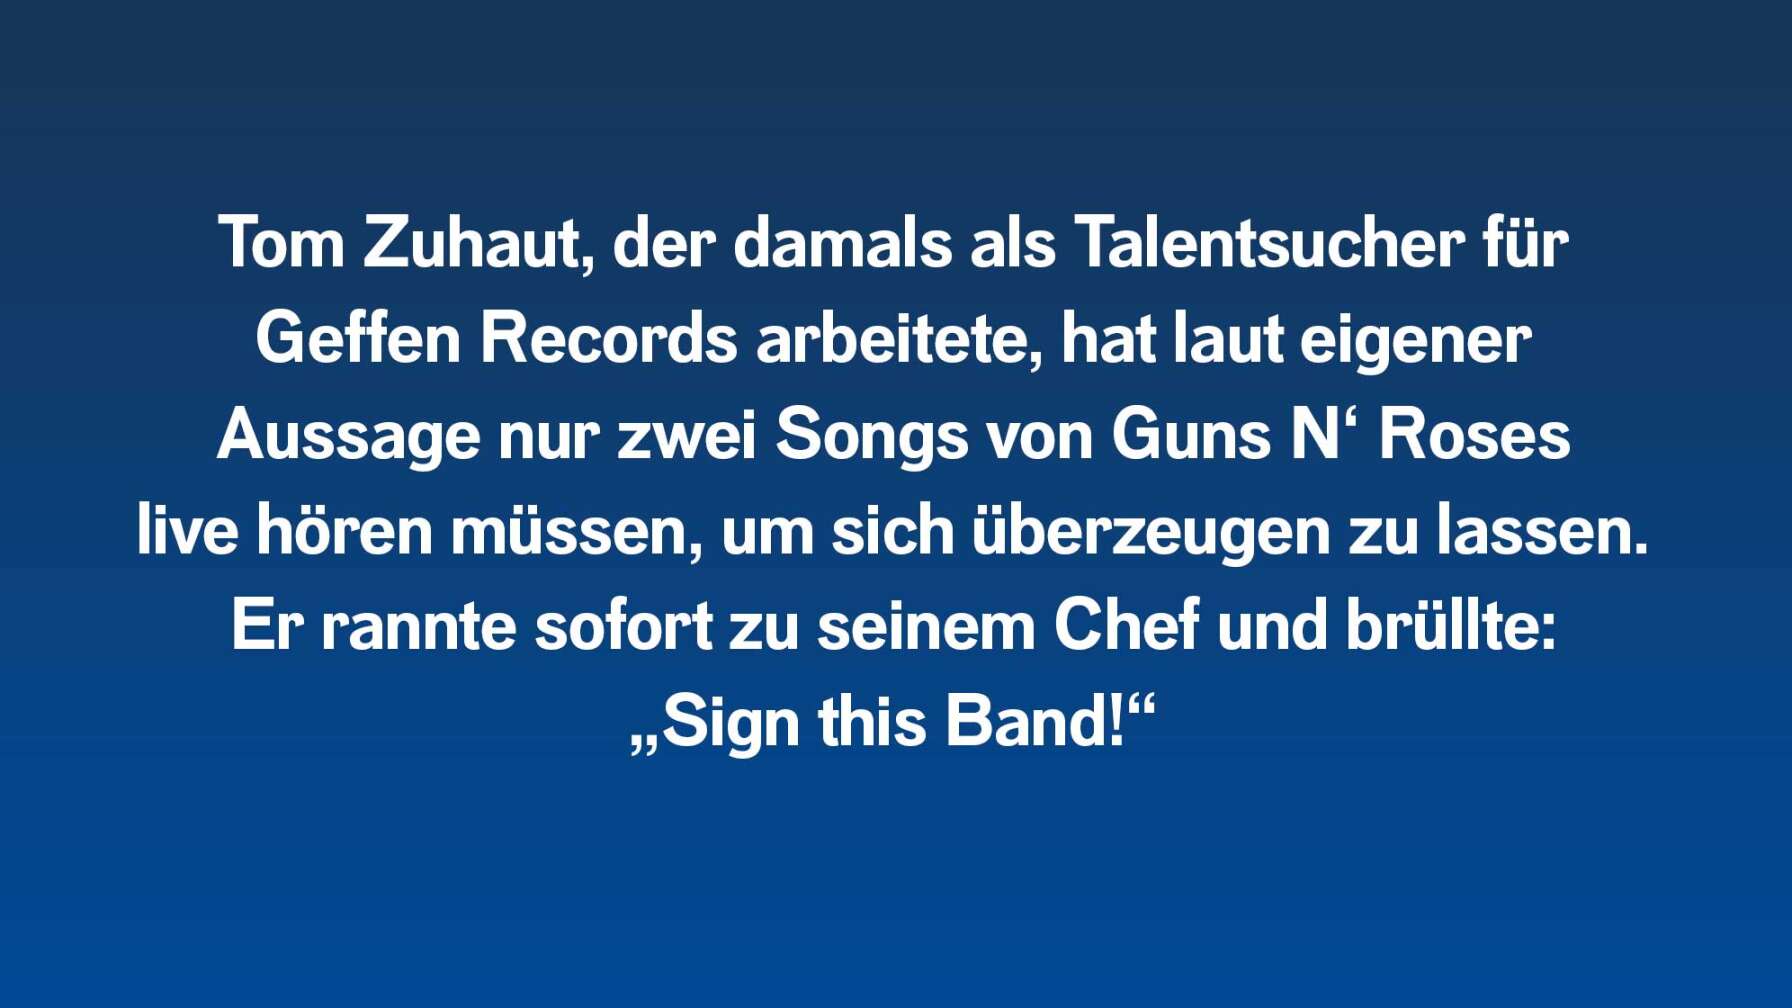 Tom Zuhaut, der damals als Talentsucher für Geffen Records arbeitete, hat laut eigener Aussage nur zwei Songs von Guns N‘ Roses live hören müssen, um sich überzeugen zu lassen. Er rannte sofort zu seinem Chef und brüllte: „Sign this Band!“